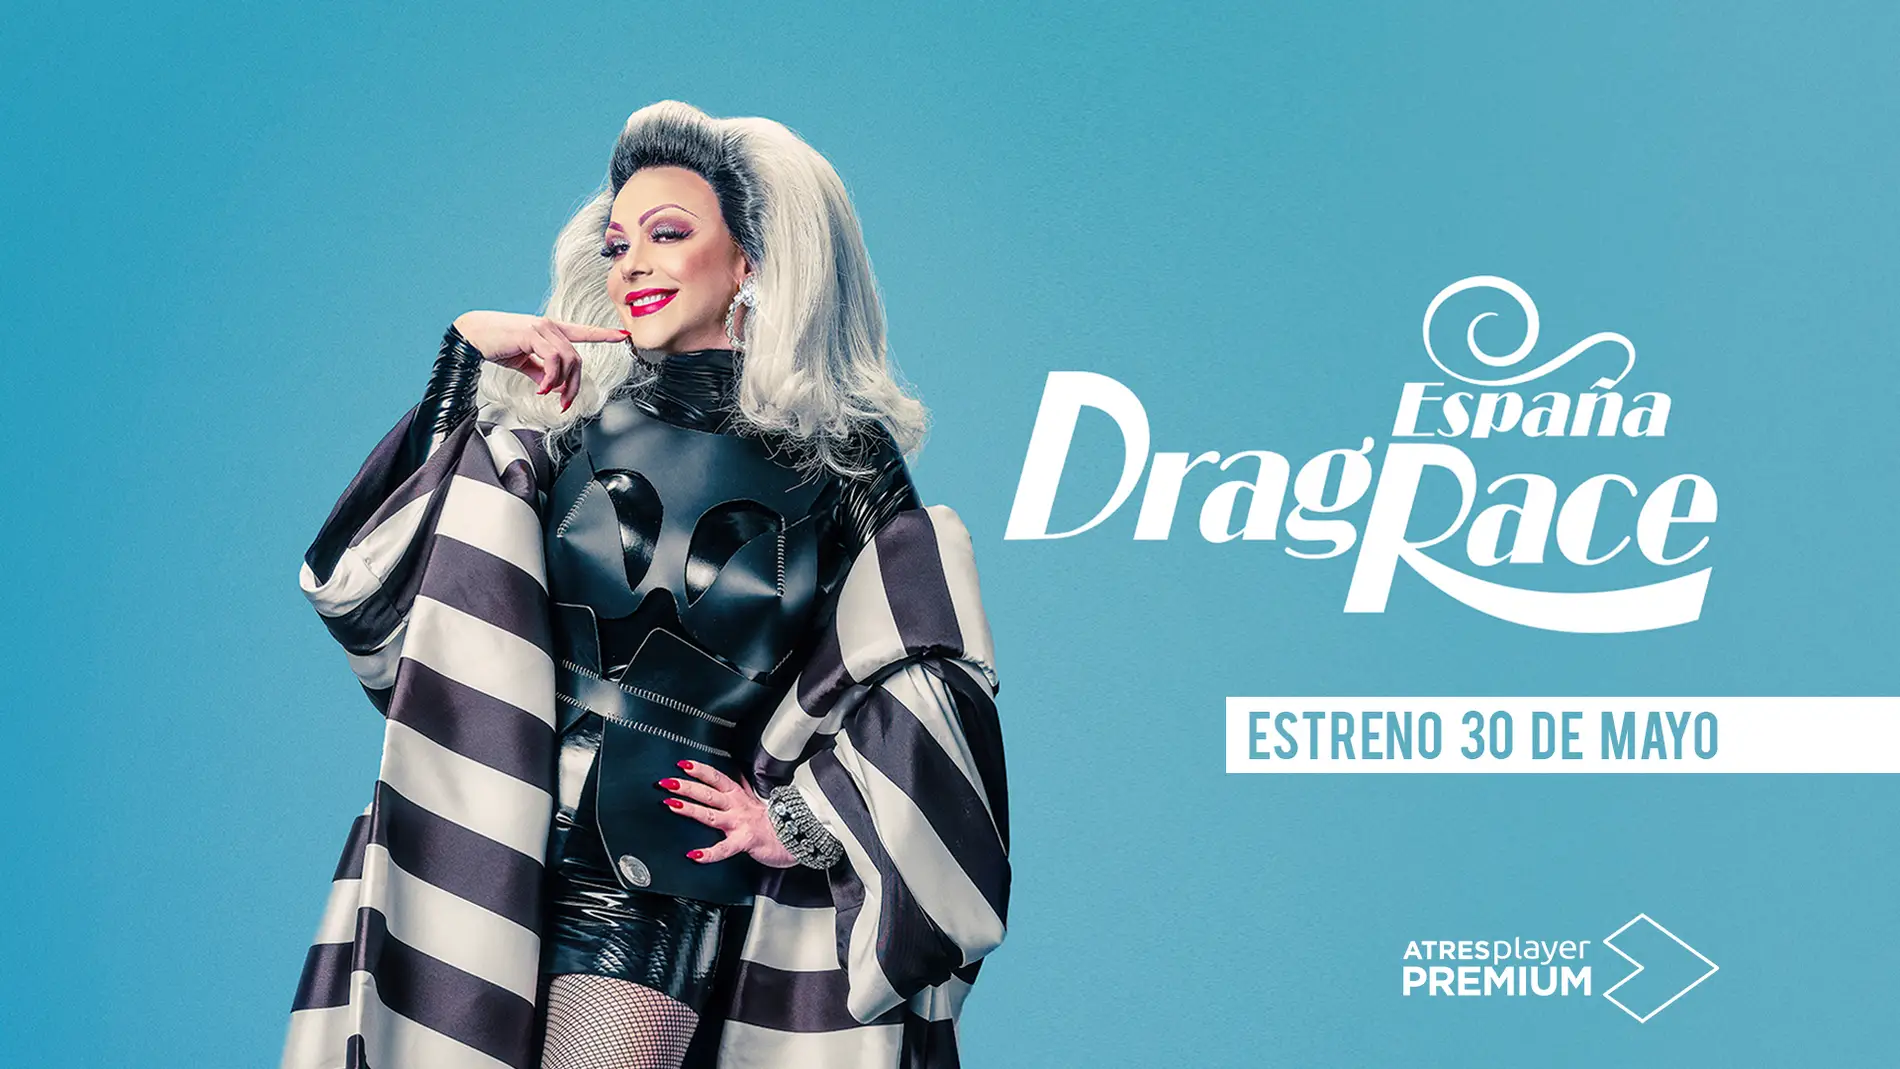 ATRESplayer PREMIUM estrena en exclusiva ‘Drag Race España’ el próximo 30 de mayo